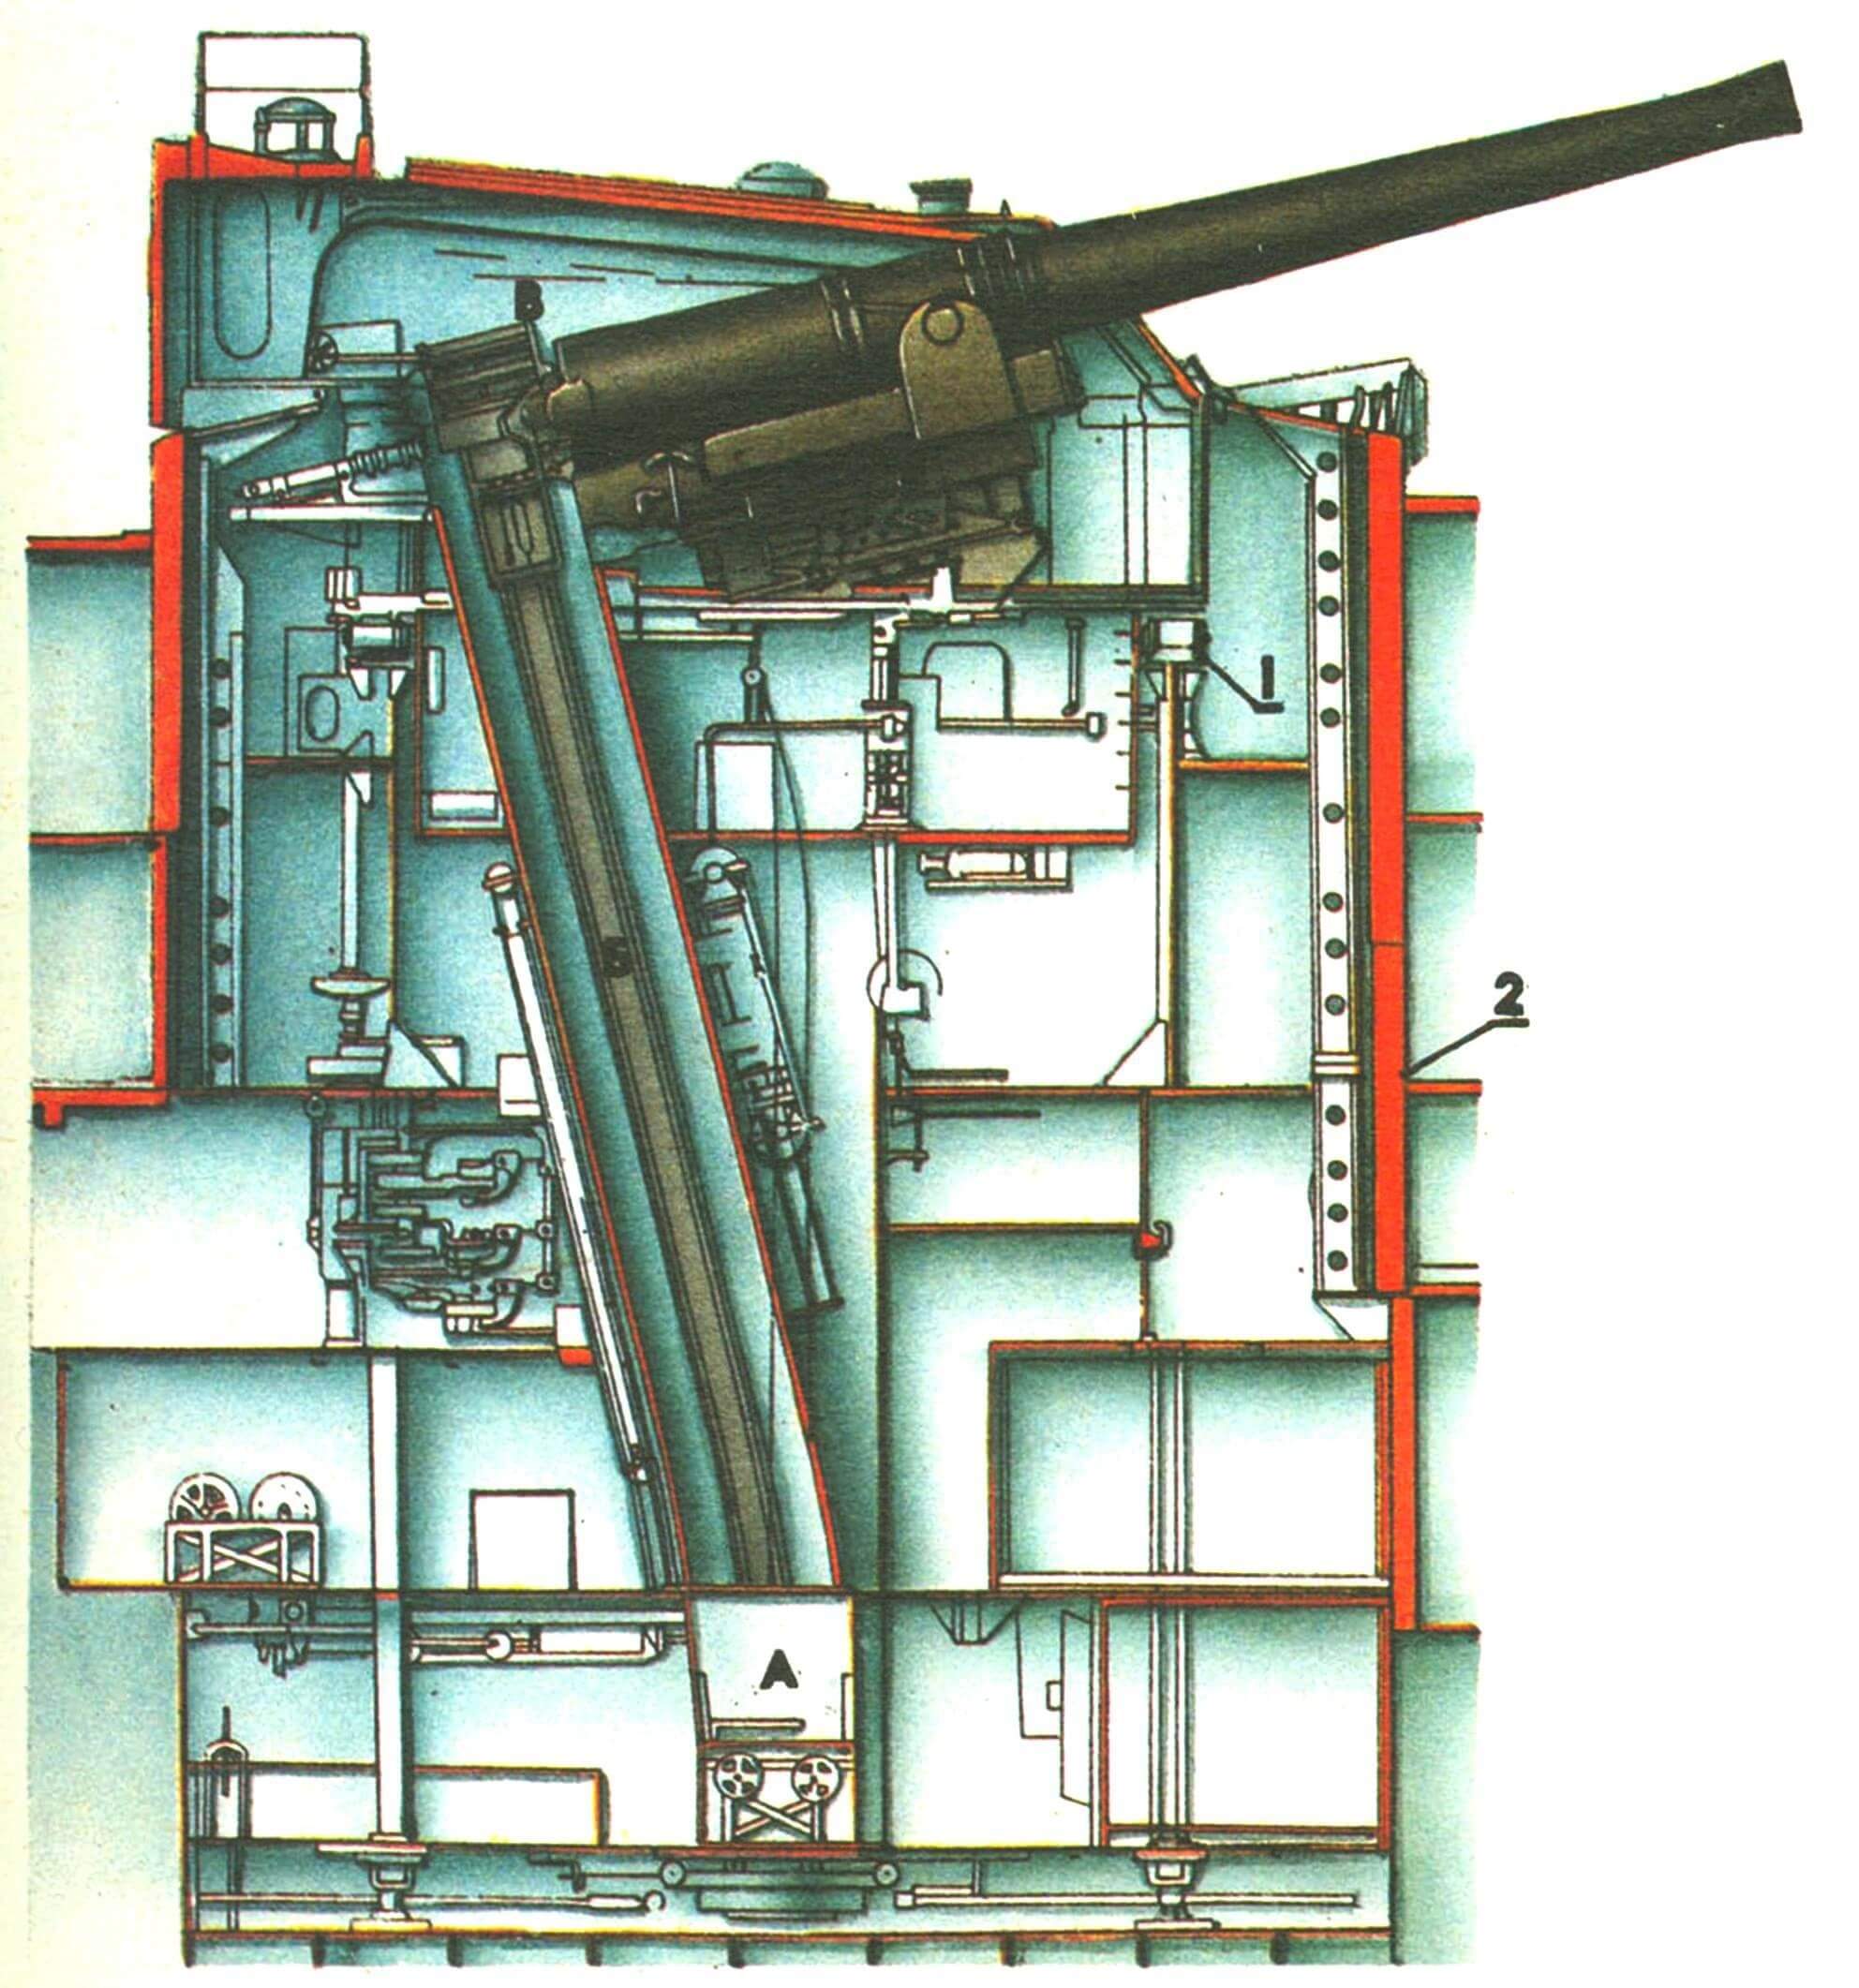 305-мм башенная артиллерийская установка броненосца «Альбион» (Англия, 1899 г.). Схема башни стала классической и оставалась практически неизменной для || всех крупных кораблей вплоть до 1945 г. А — перегрузочное отделение, Б — элеватор подачи боеза паса, В — вращающаяся часть башни; 1 — роликовый погон 2 — броня неподвижного барбета.